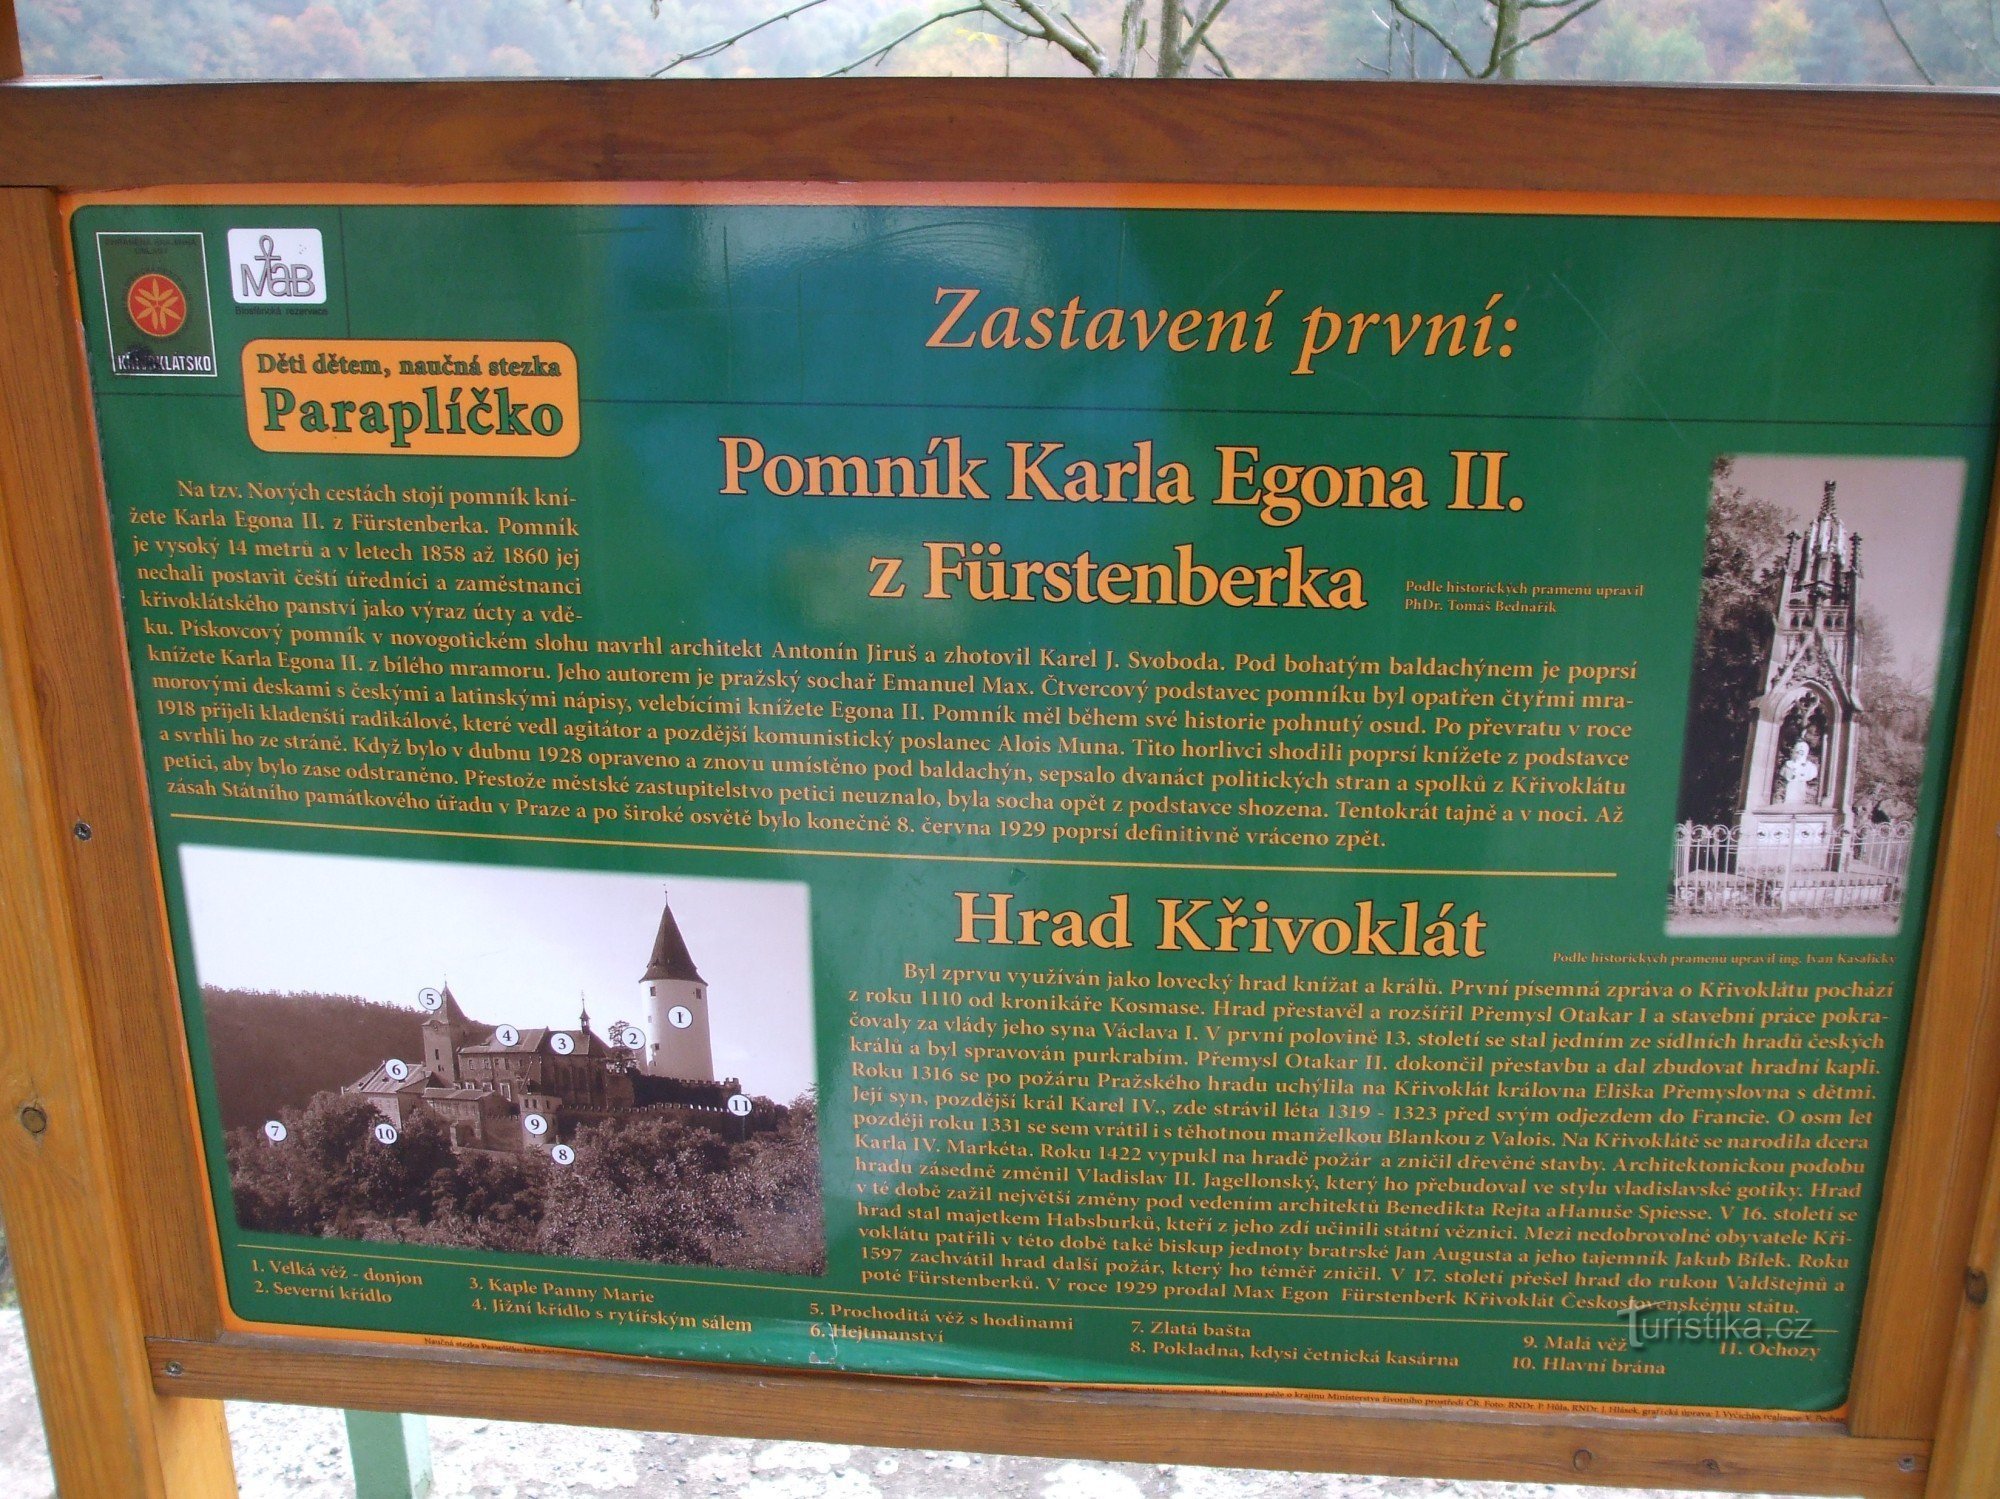 Pomnik księcia Karola Egona II. z Fürstenberg w Křivoklát.